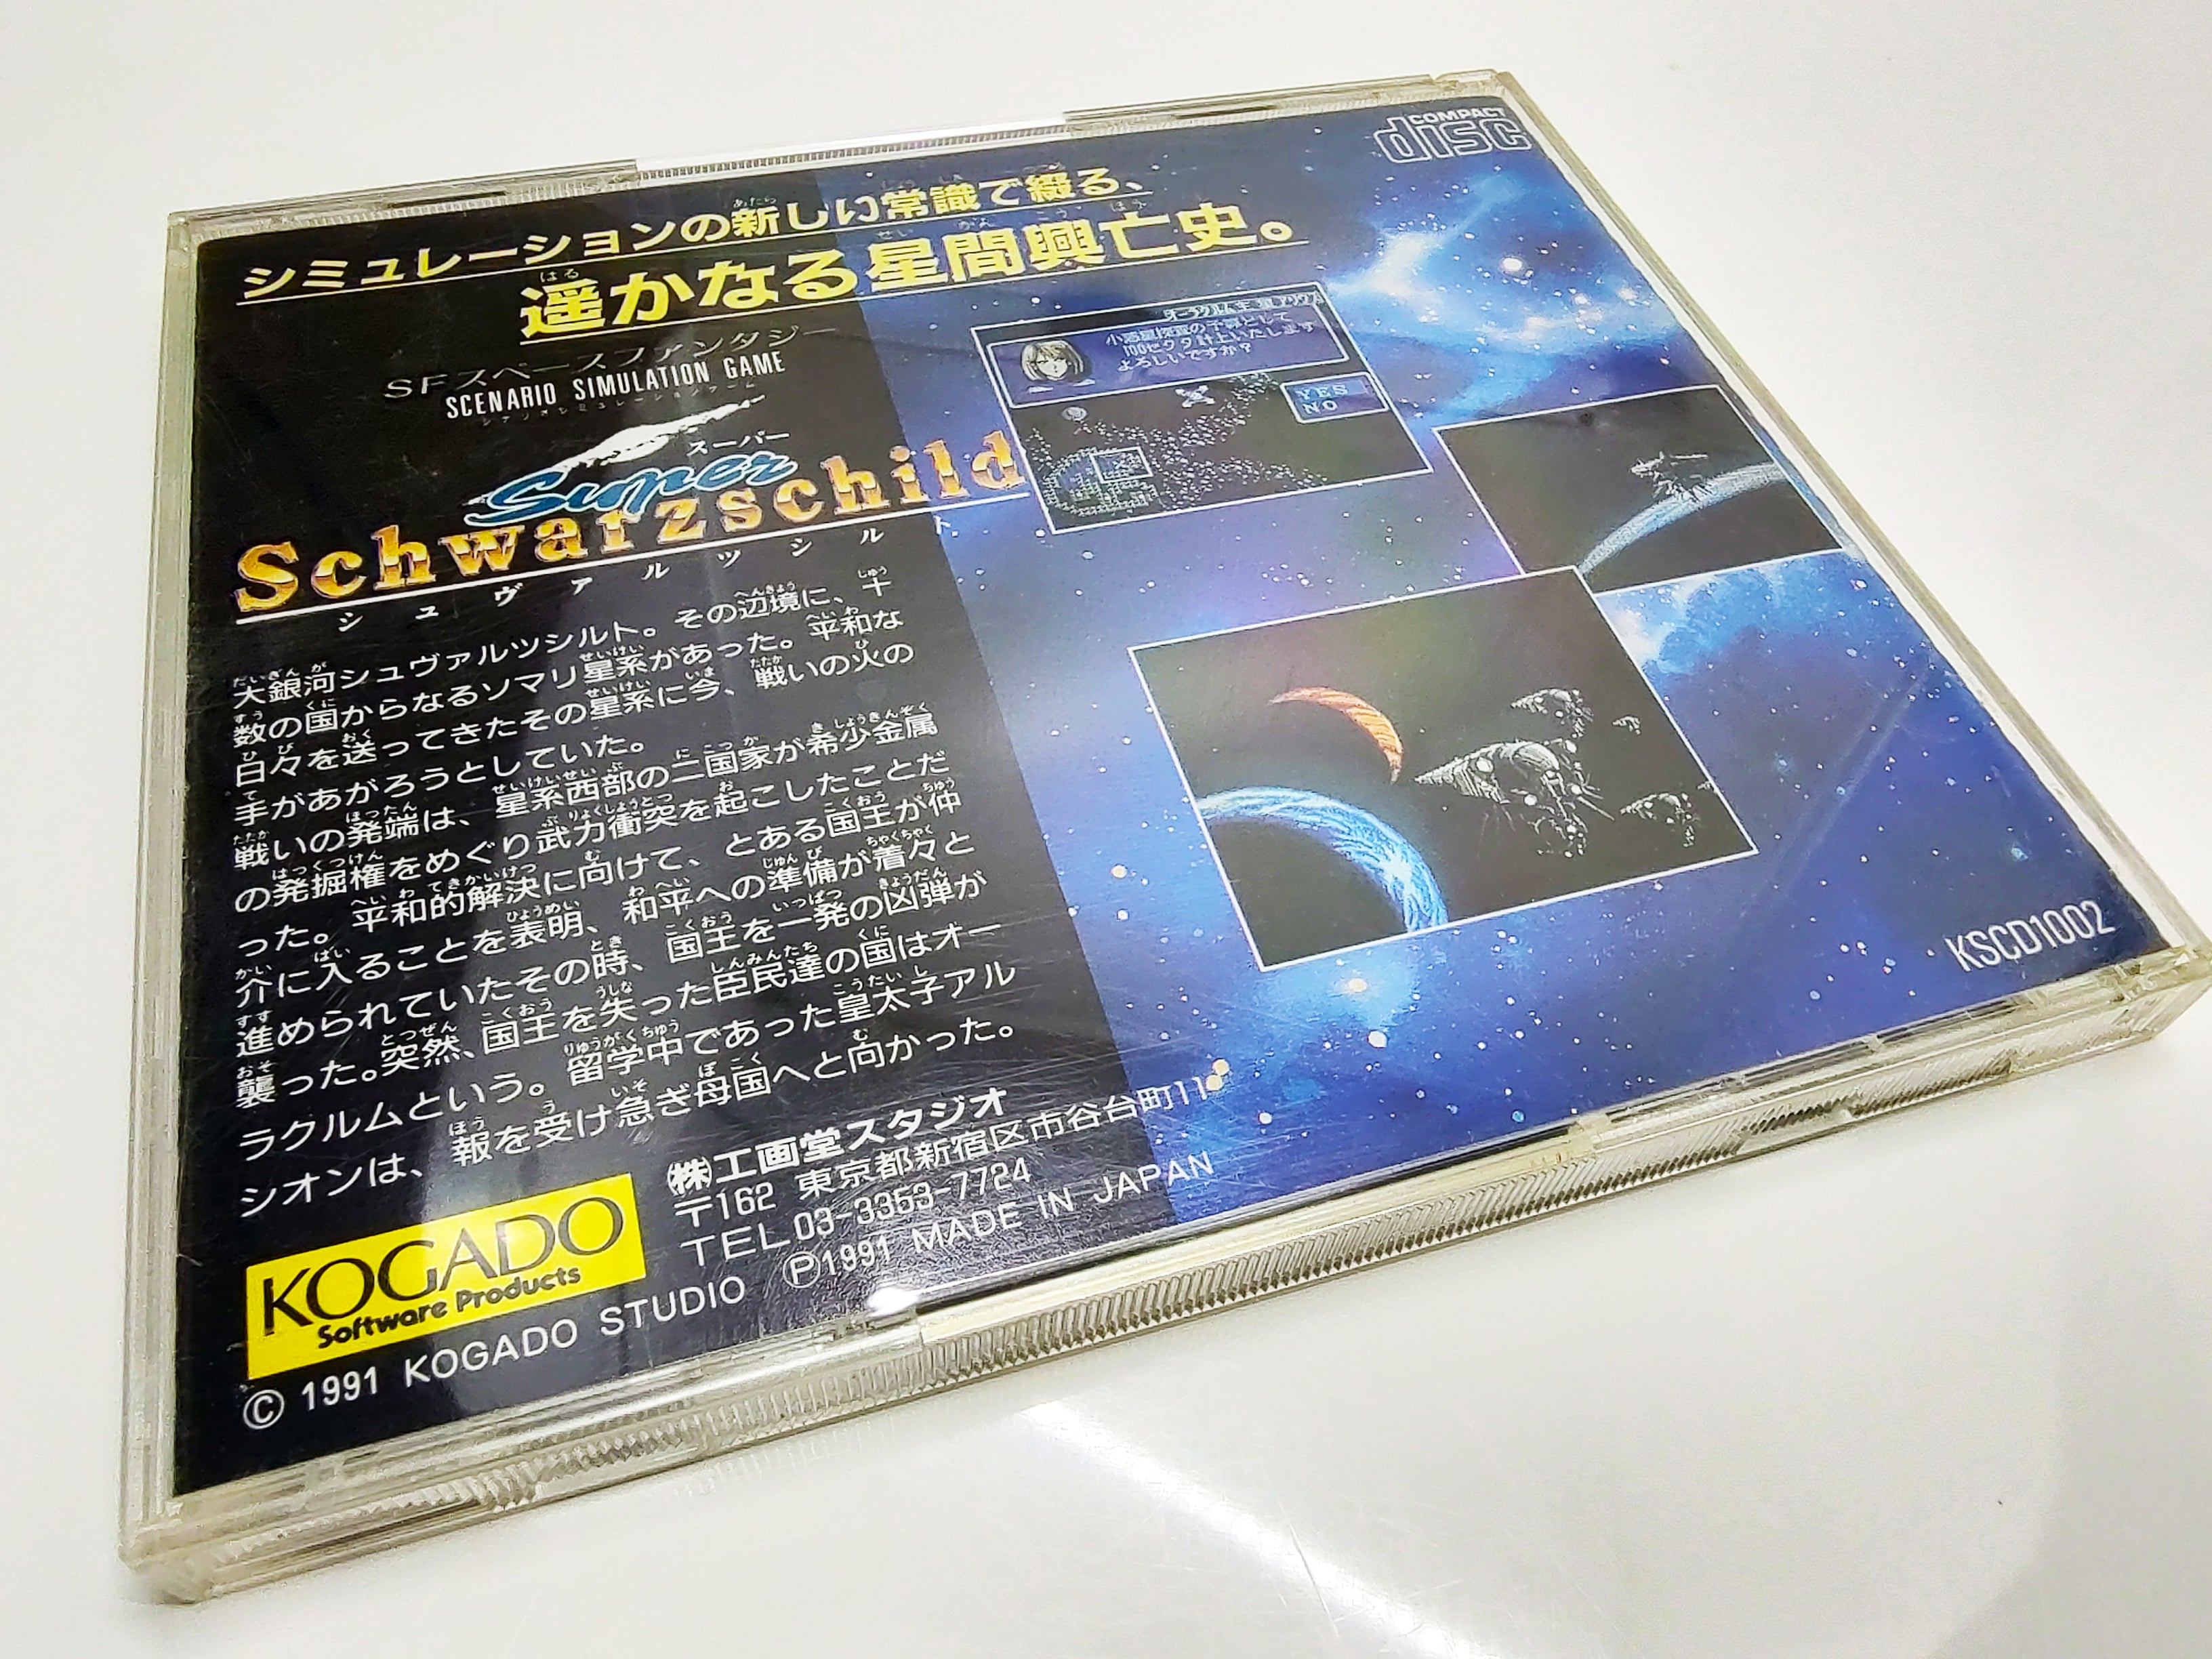 Super Schwarzschild | PC Engine | Back of case